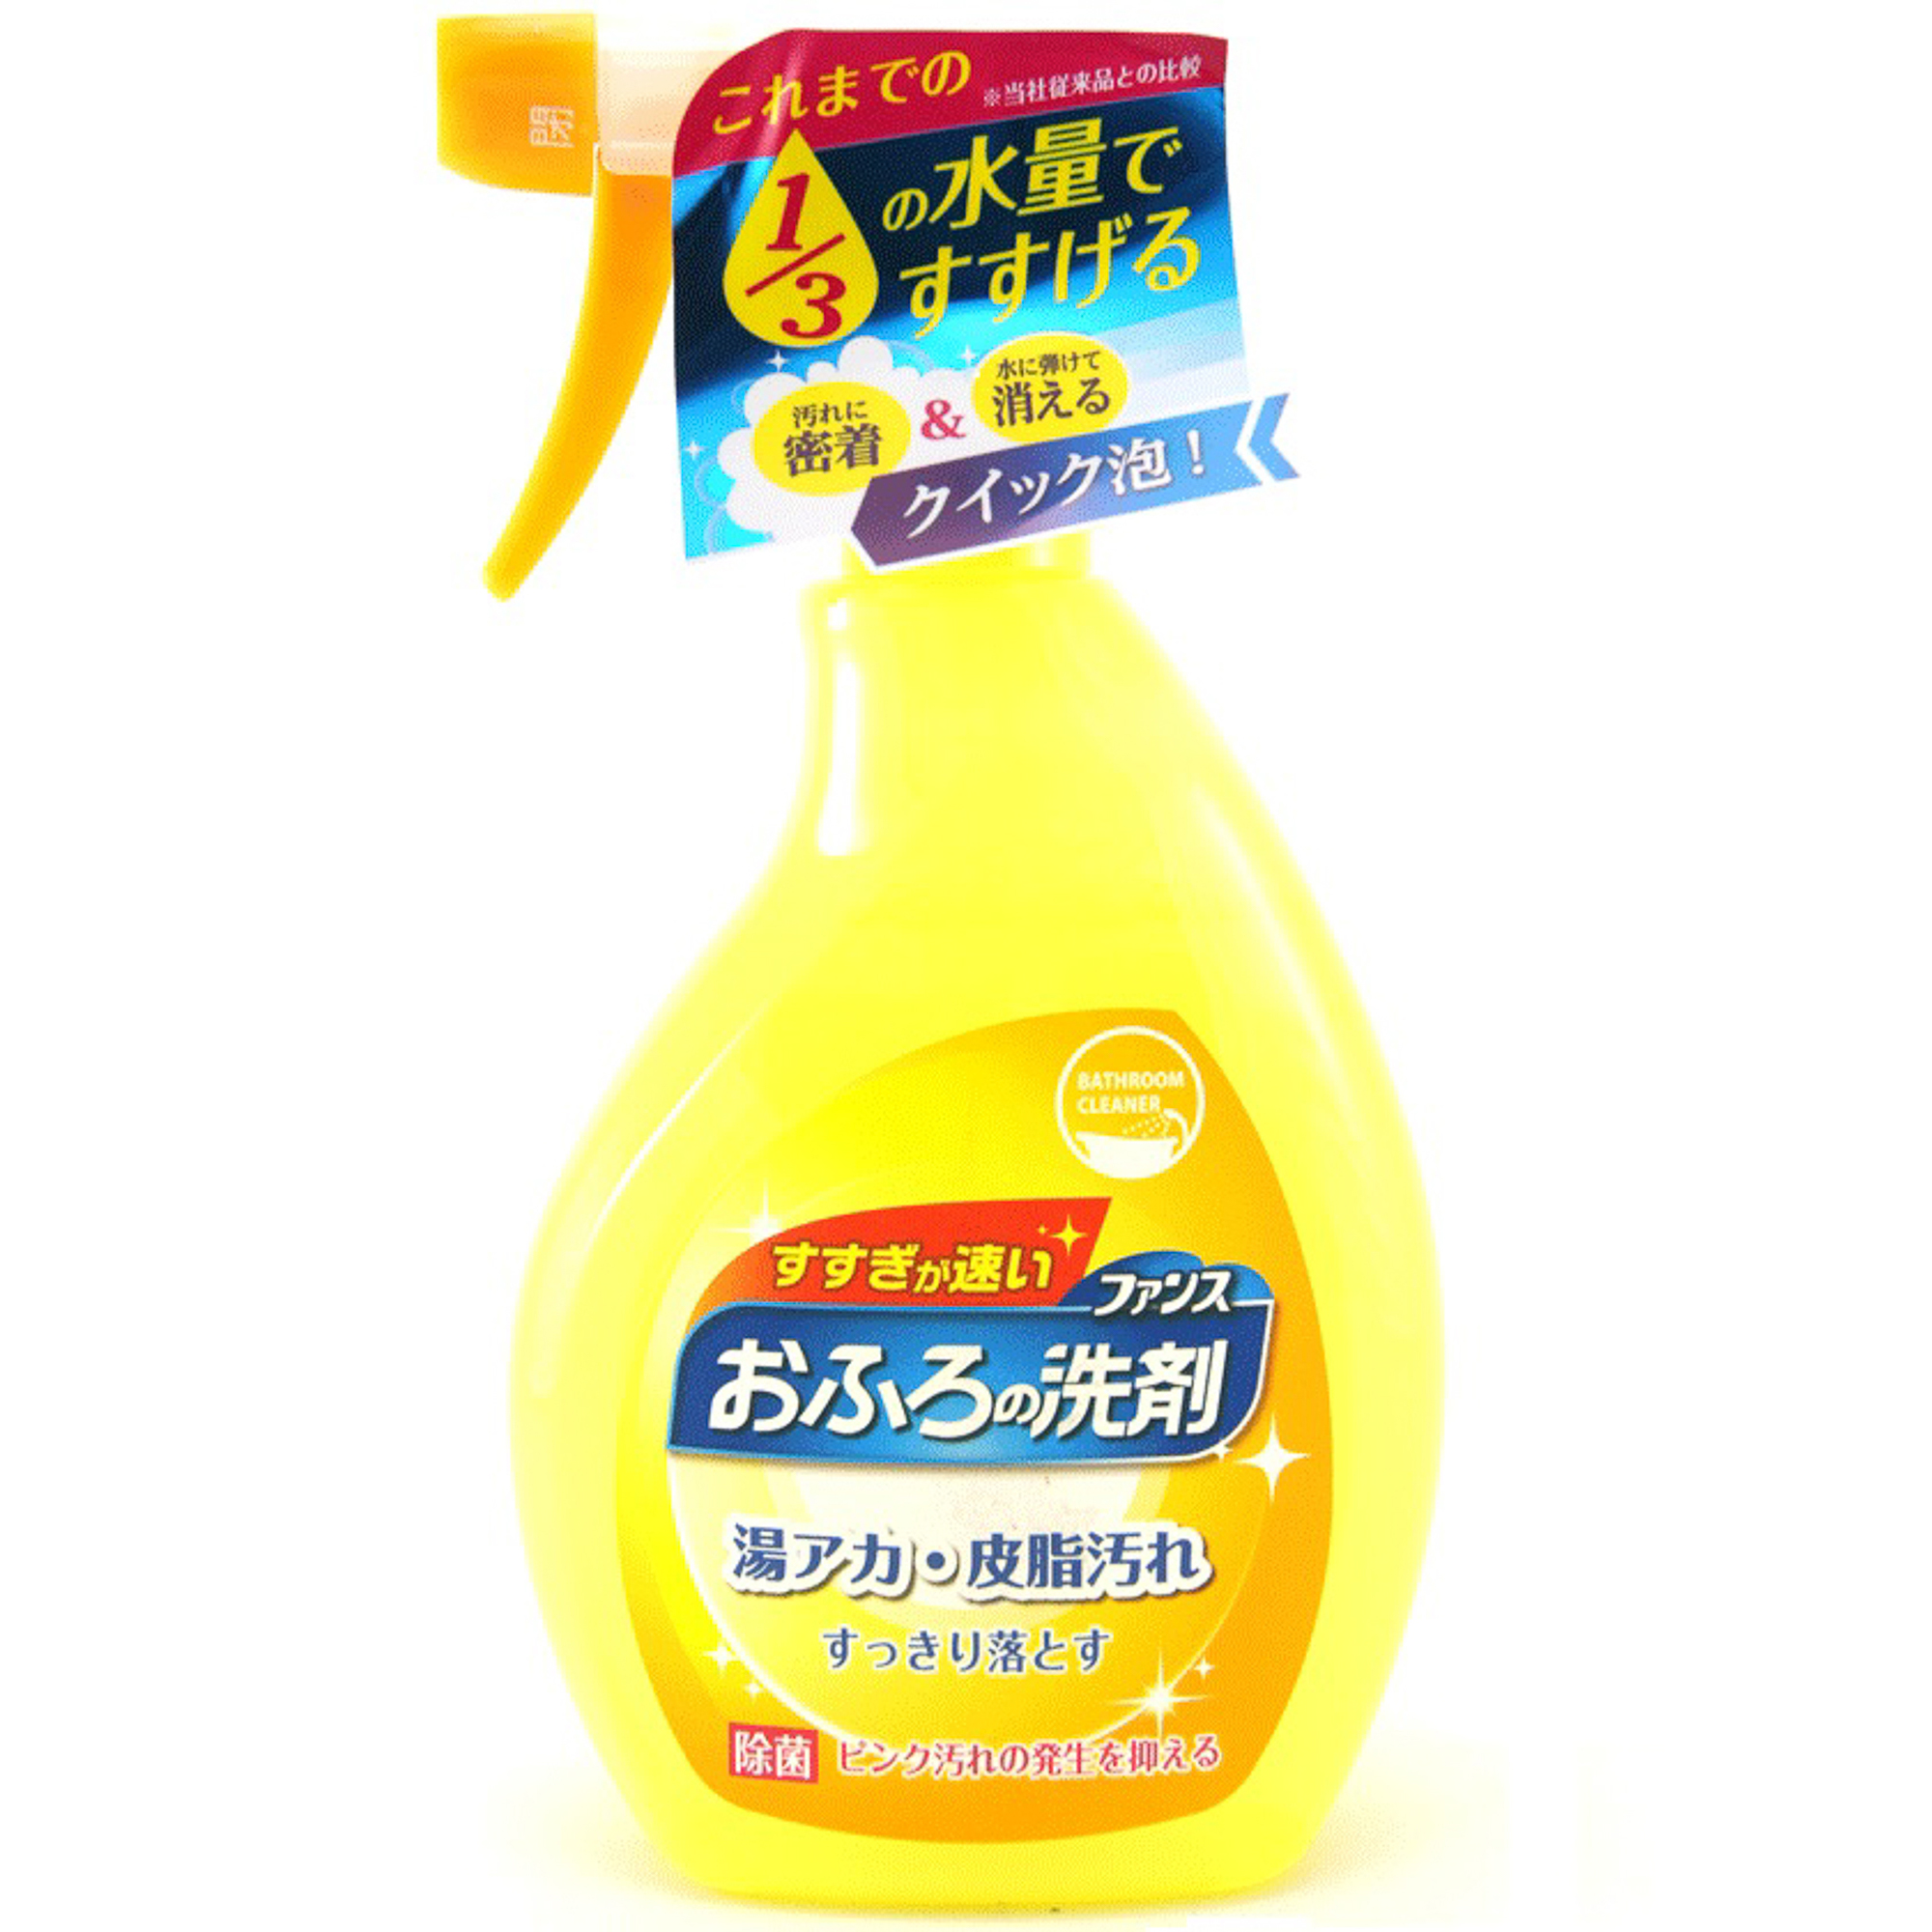 Спрей пенный Daiichi Ofuro для чистки в ванной комнате 380 мл спрей для чистки экрана attache selection